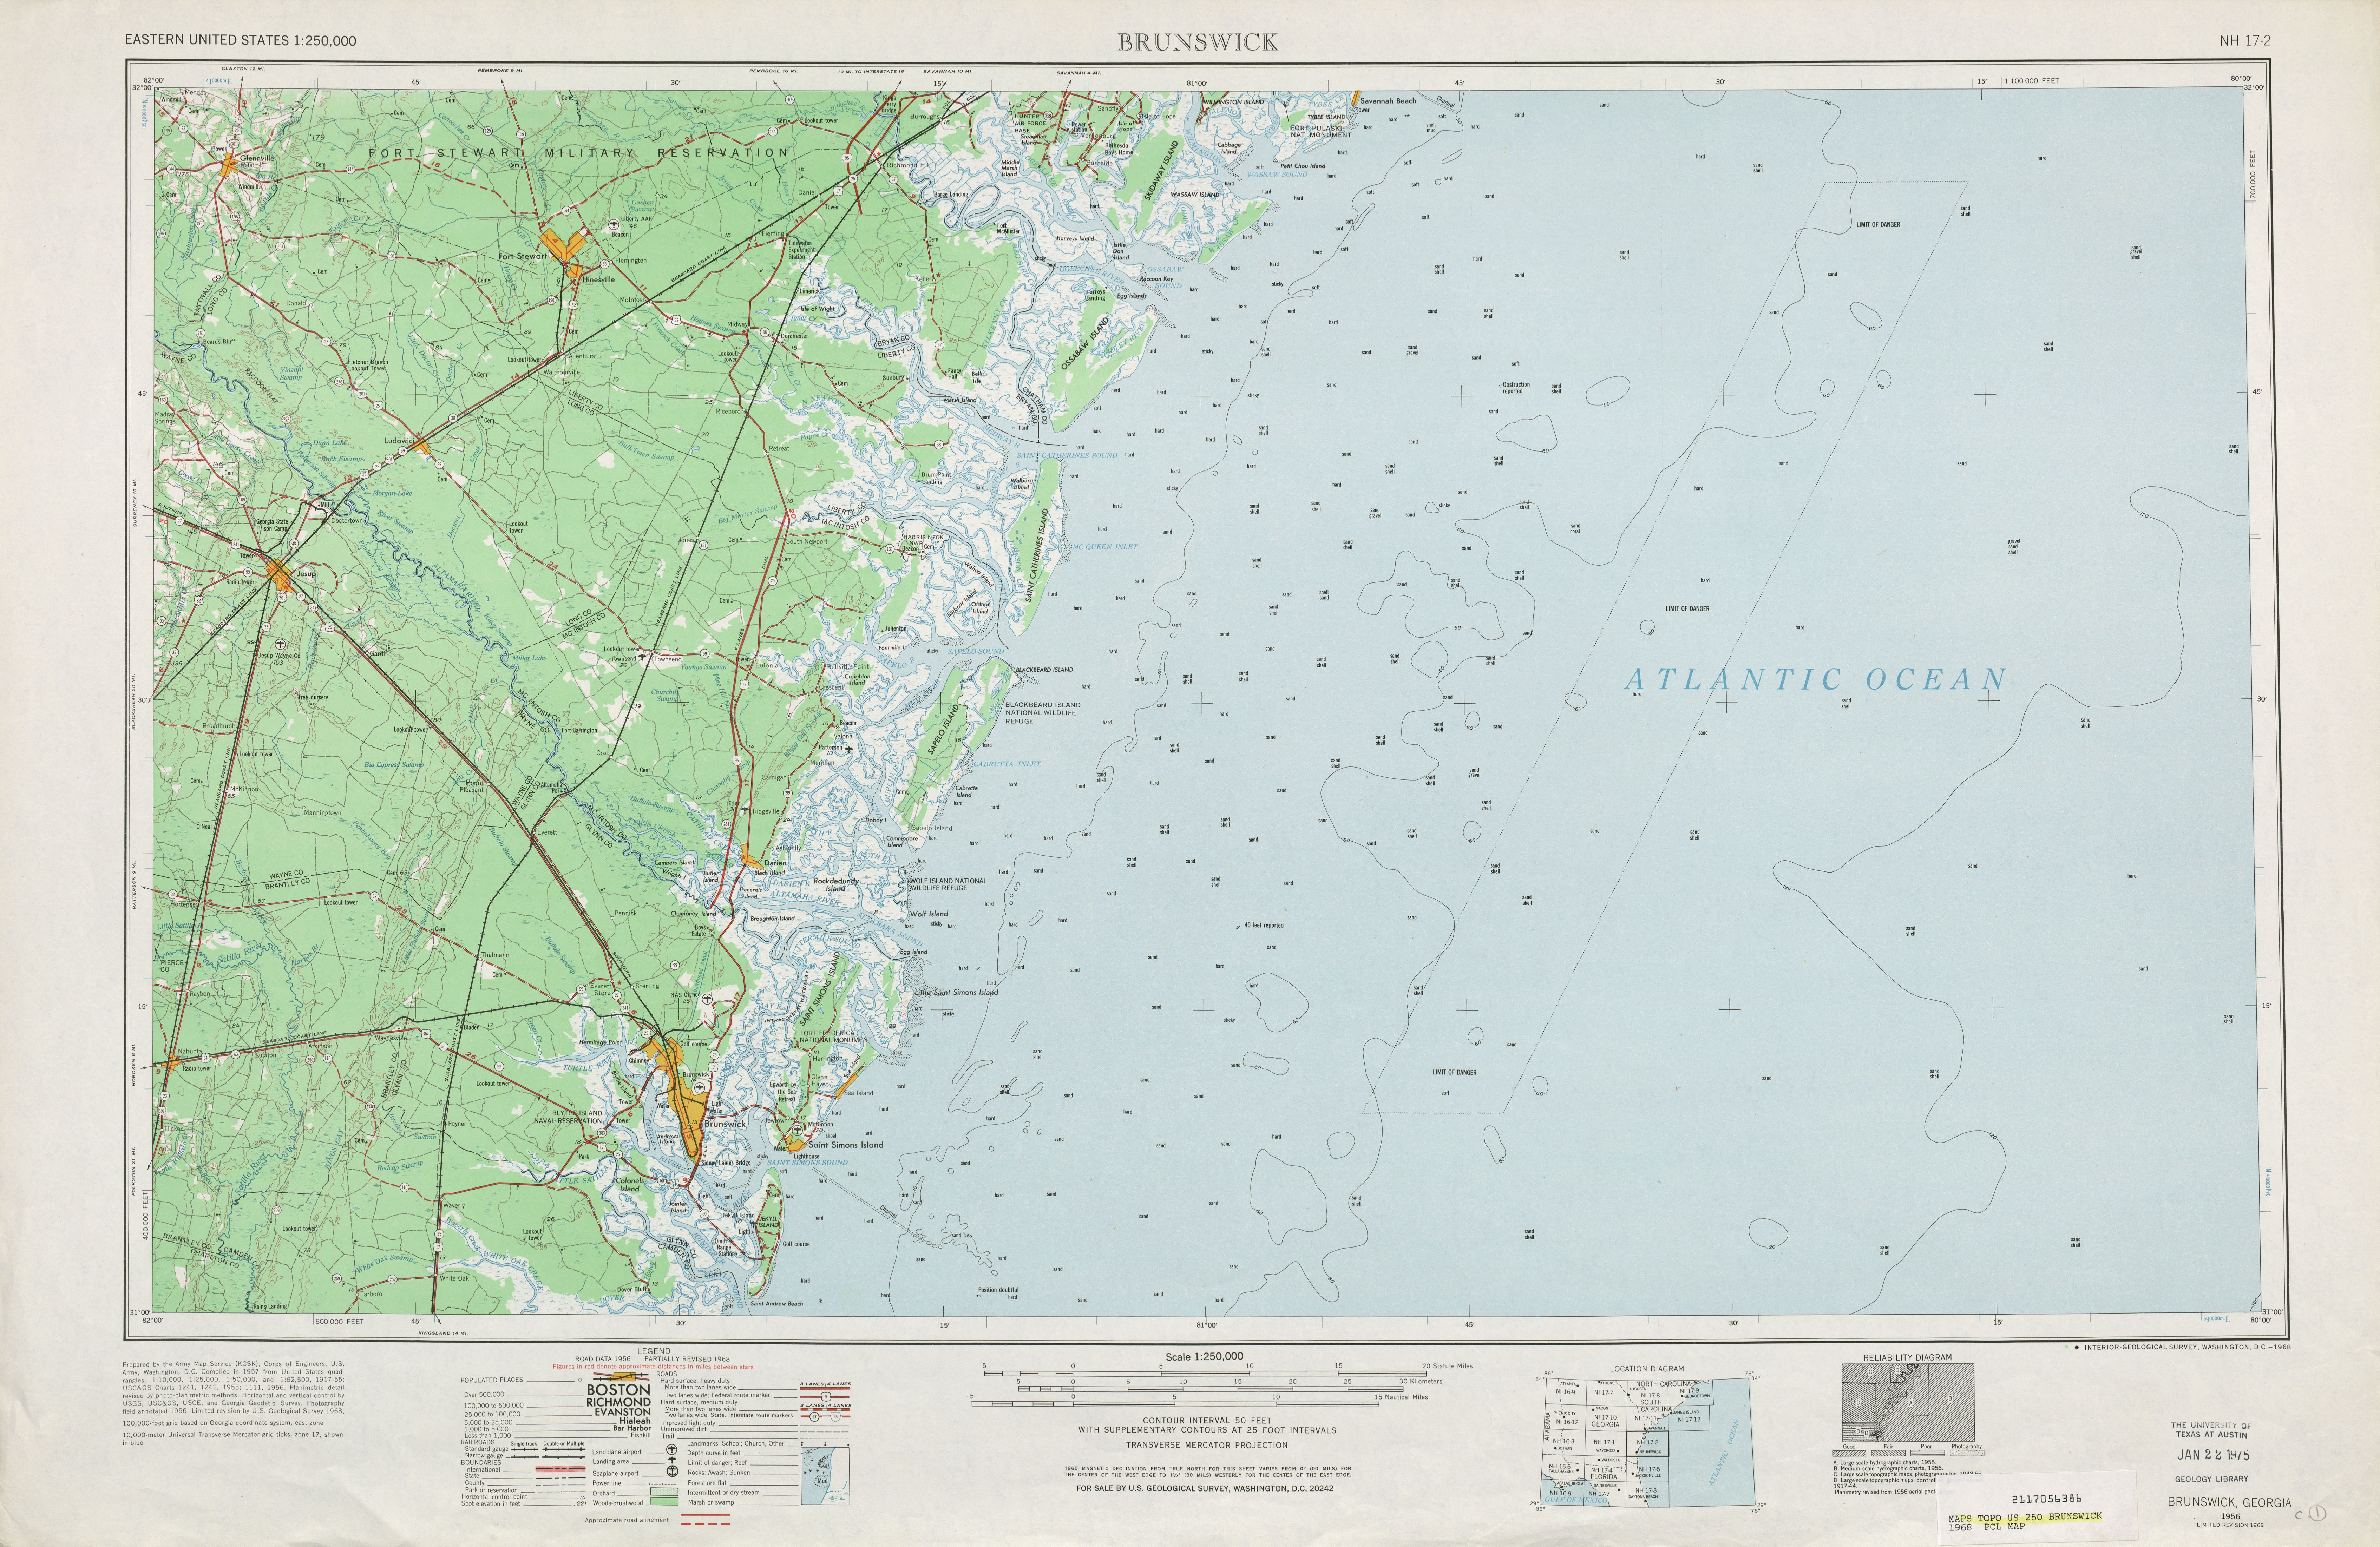 Hoja Brunswick del Mapa Topográfico de los Estados Unidos 1968